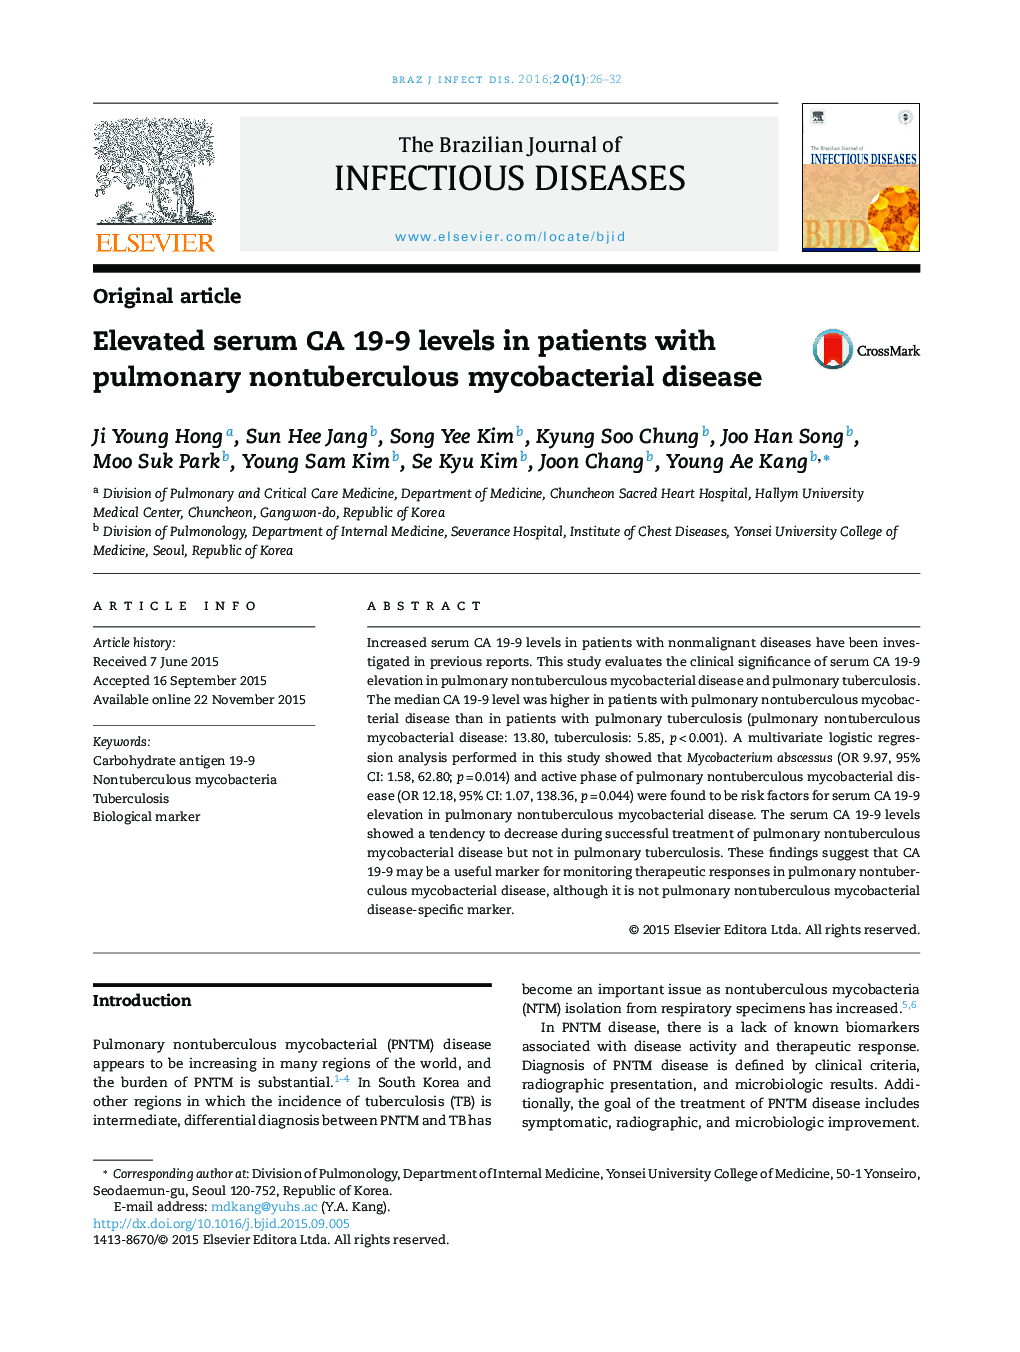 افزایش سطح سرمی CA 19-9 در بیماران مبتلا به بیماری مایکوباکتریال غیرسلولی ریوی